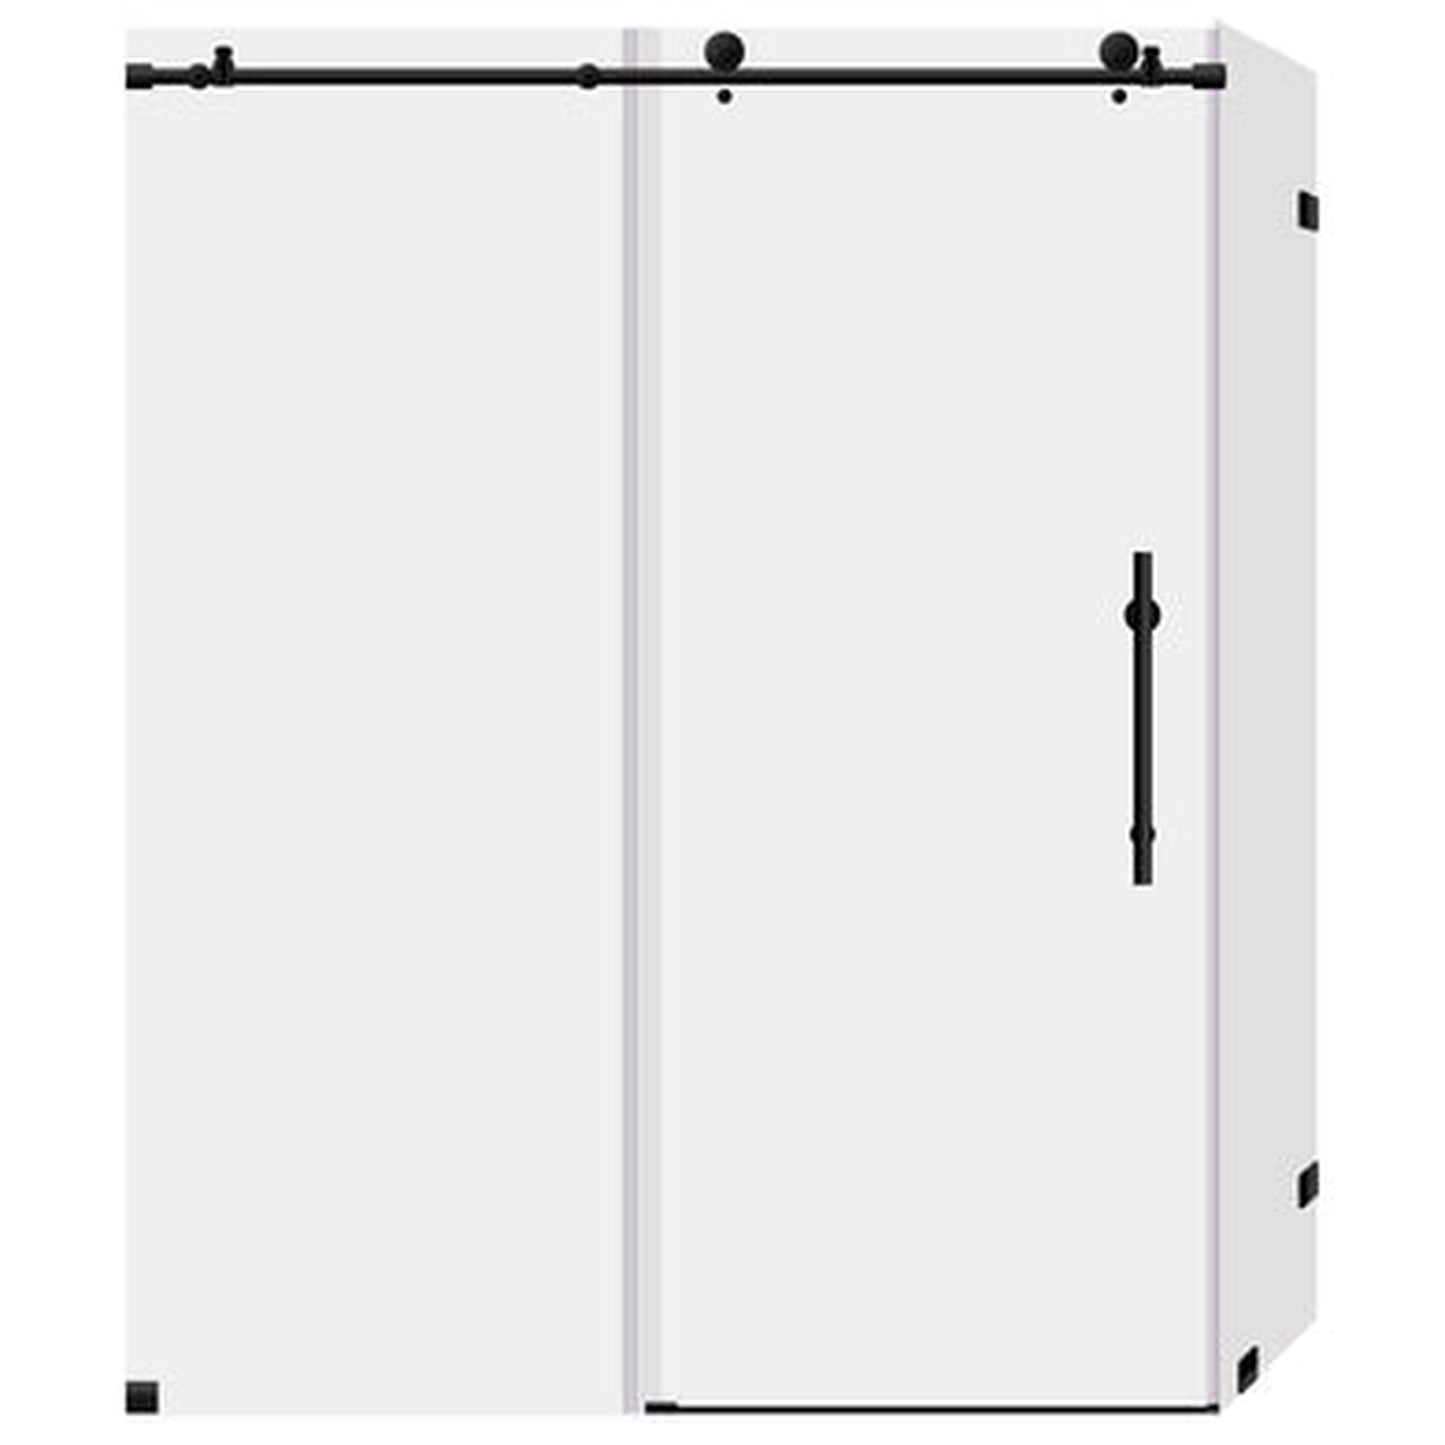 LessCare Ultra-C 56-60" x 76" x 36" Matte Black Sliding Shower Enclosure